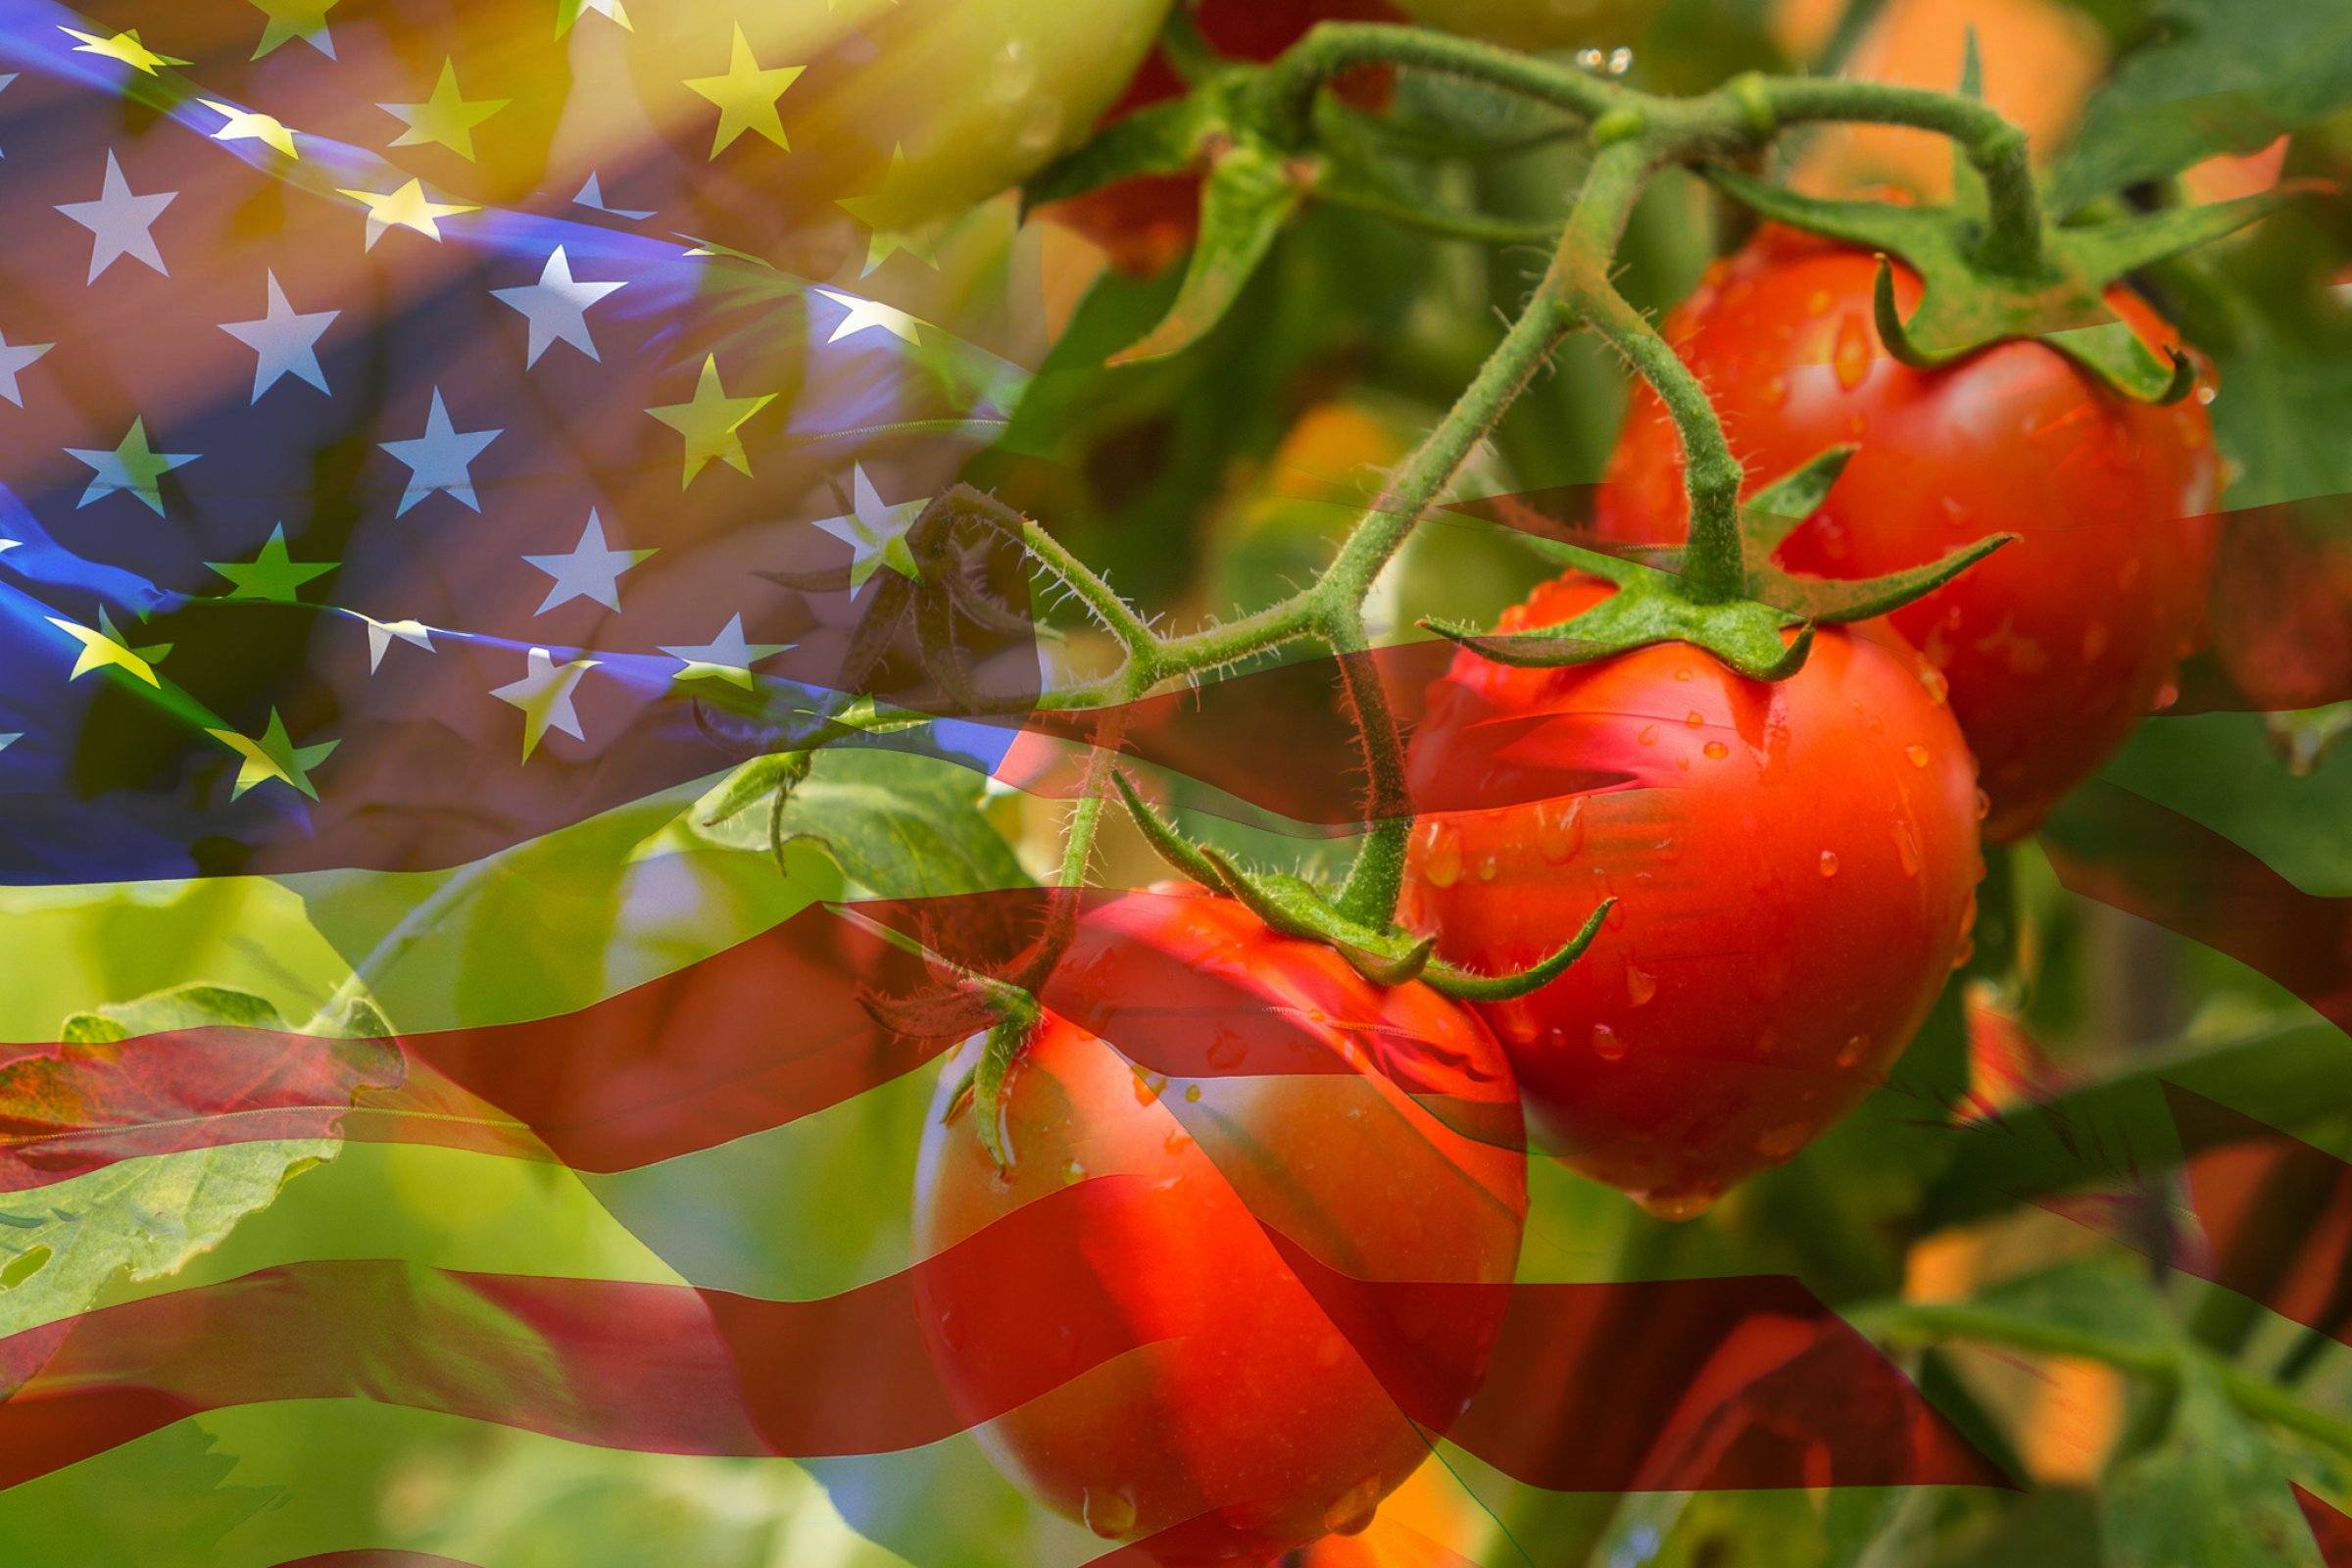 Tomato meets USA